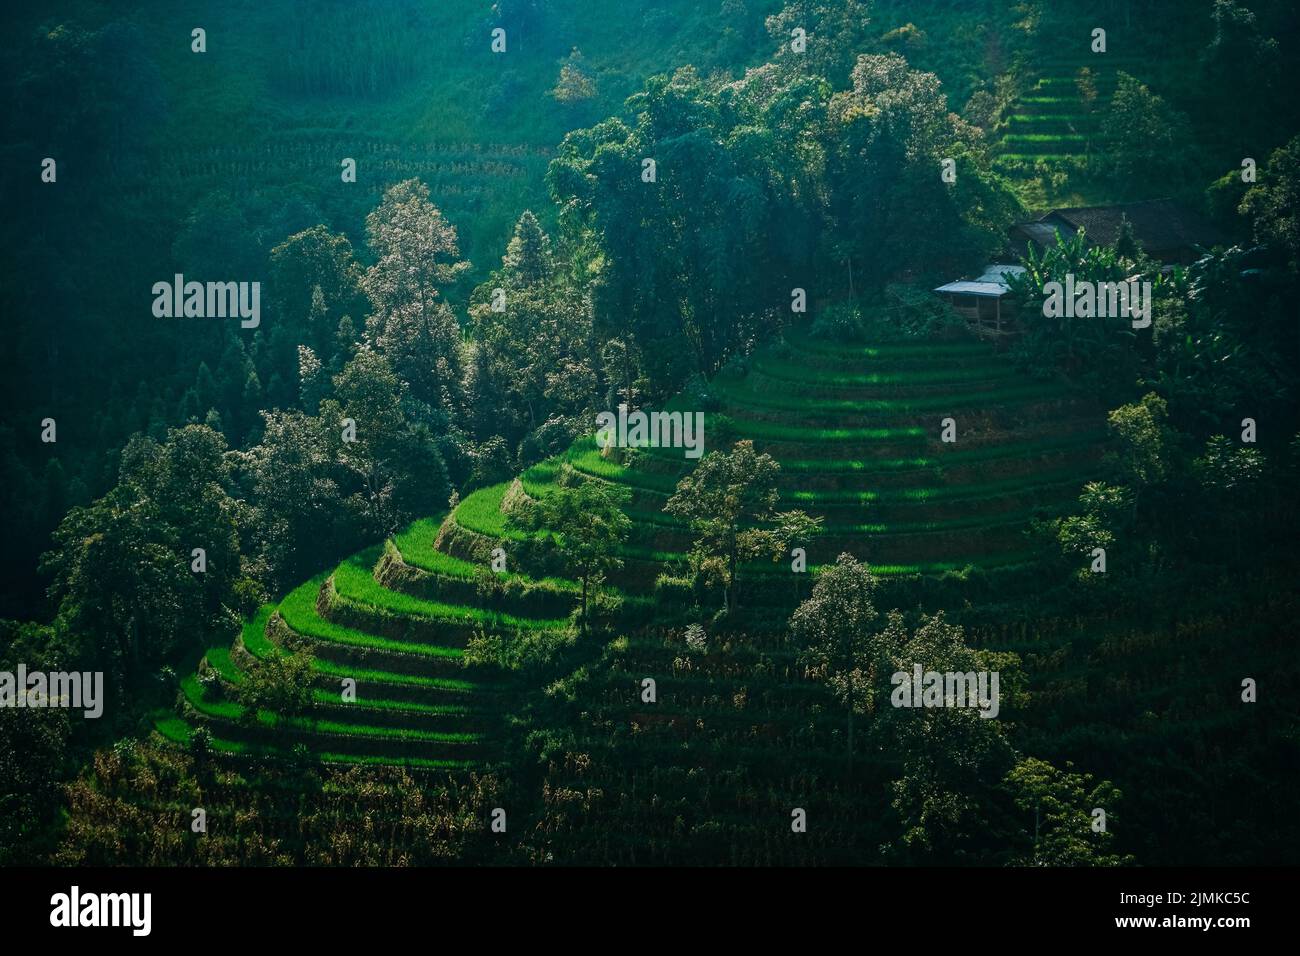 Rice terraces of Vietnam Stock Photo